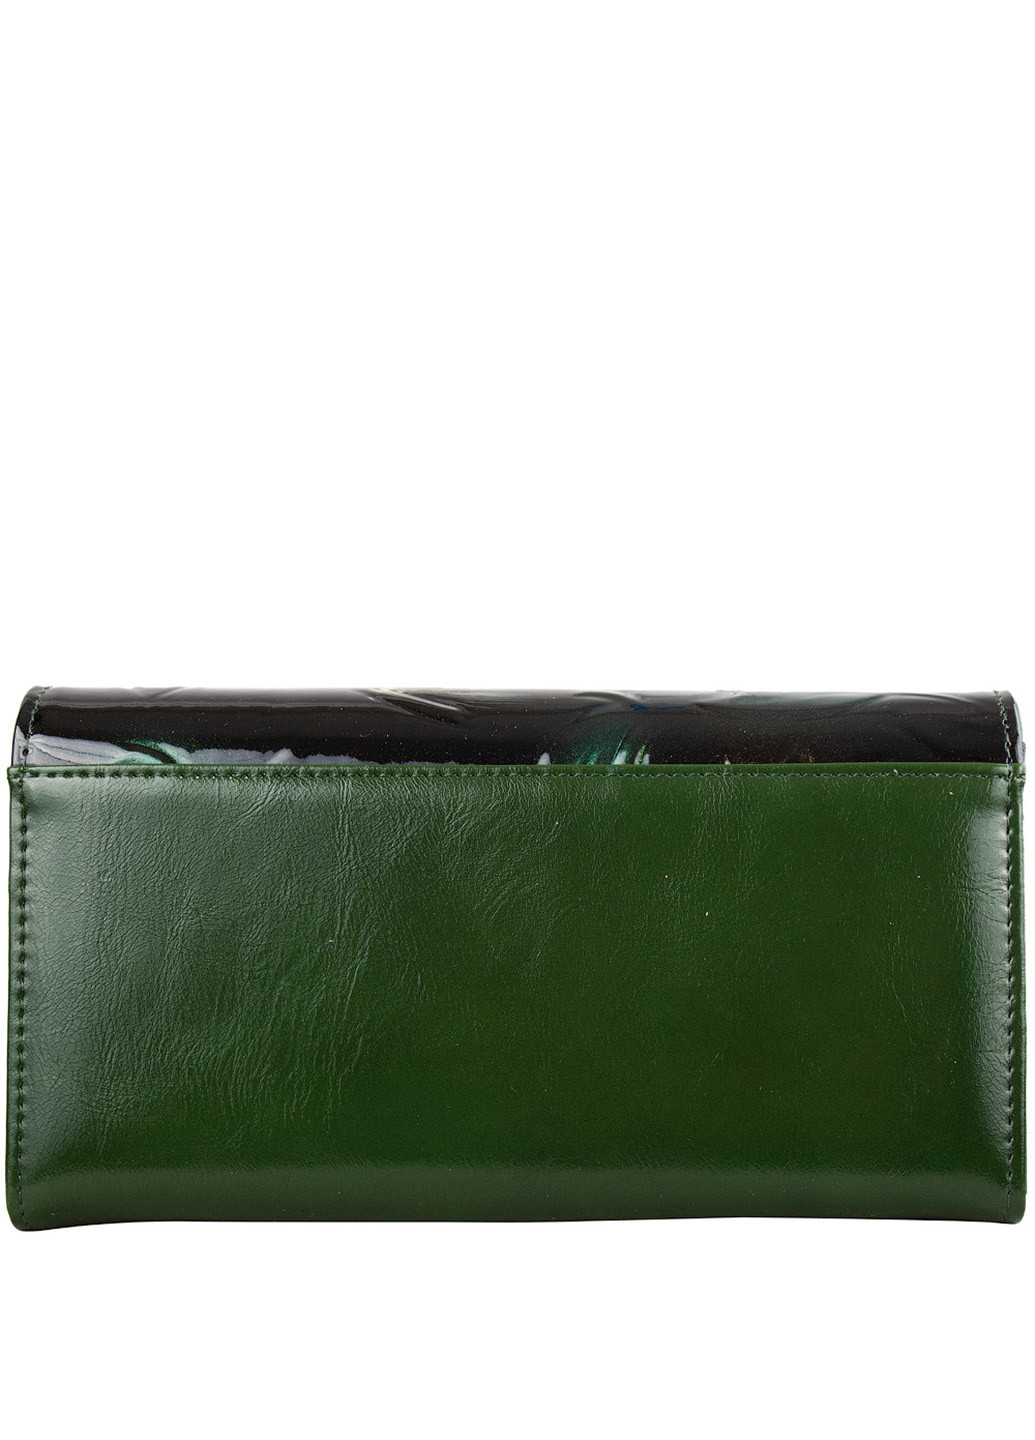 Жіночий шкіряний гаманець 18,5х9х3 см 4U Cavaldi (216146169)